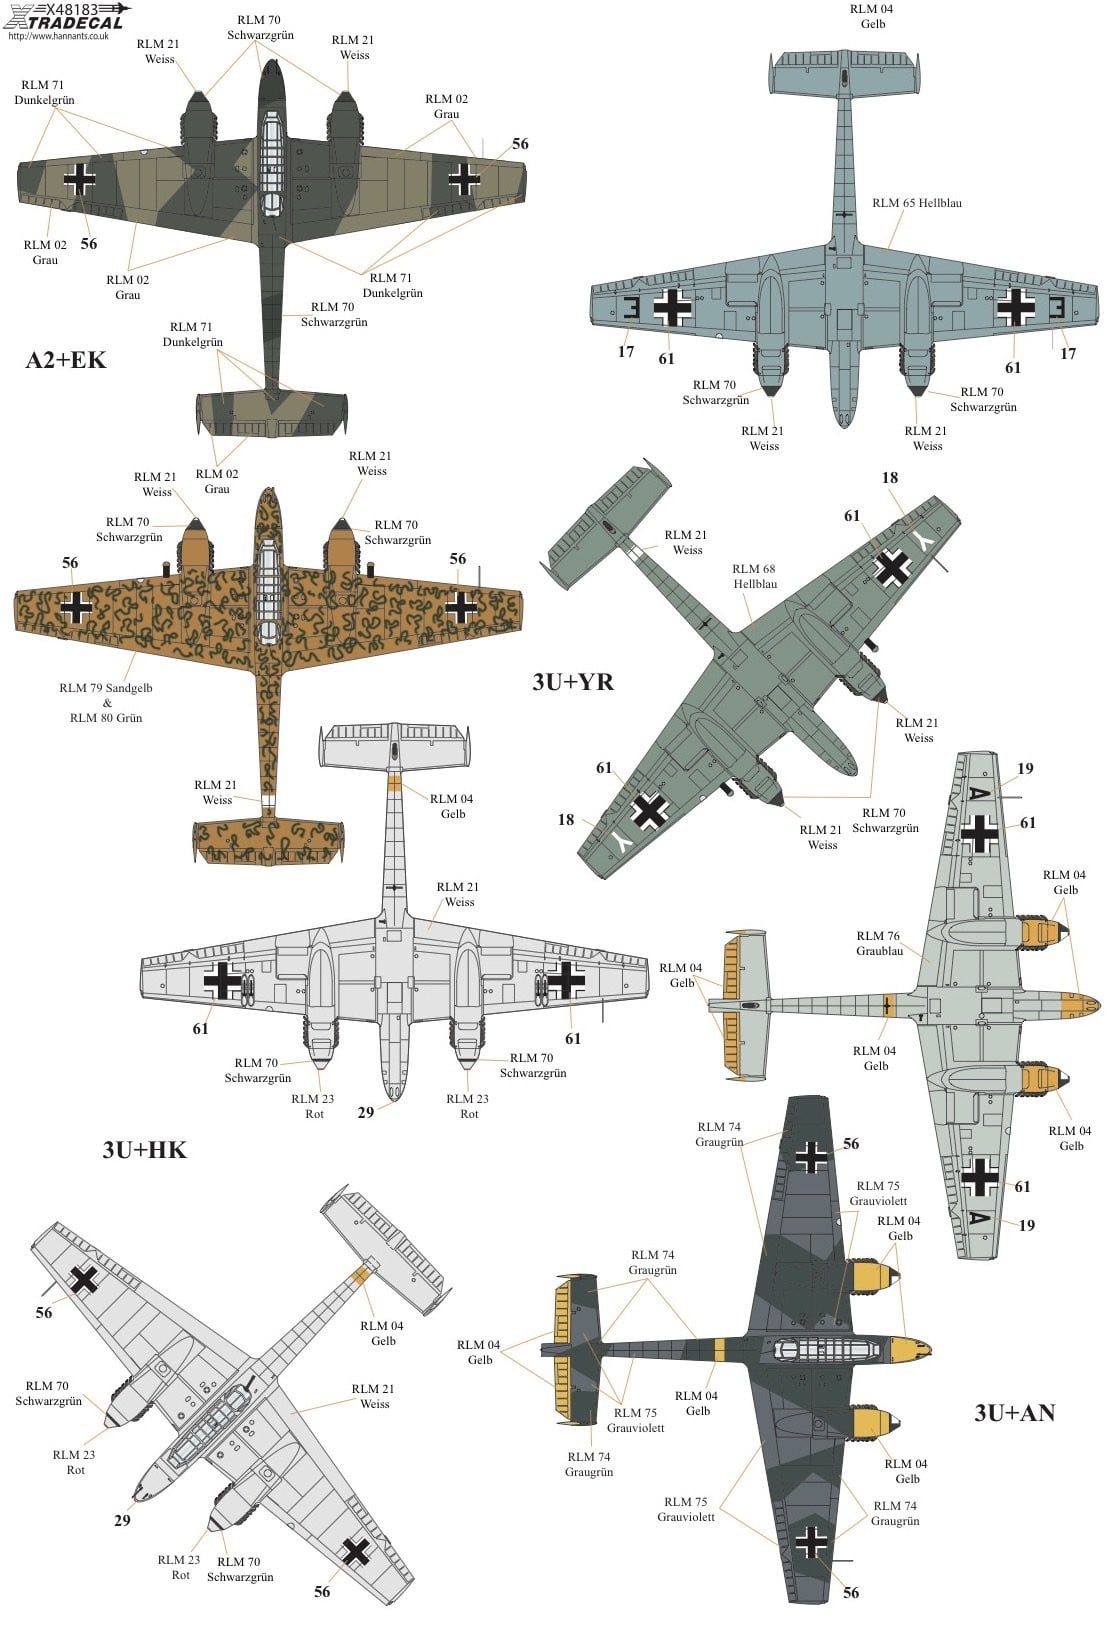 Xtradecal X48183 1/48 Messerschmitt Bf-110 C,D,E,F,G Model Decals - SGS Model Store